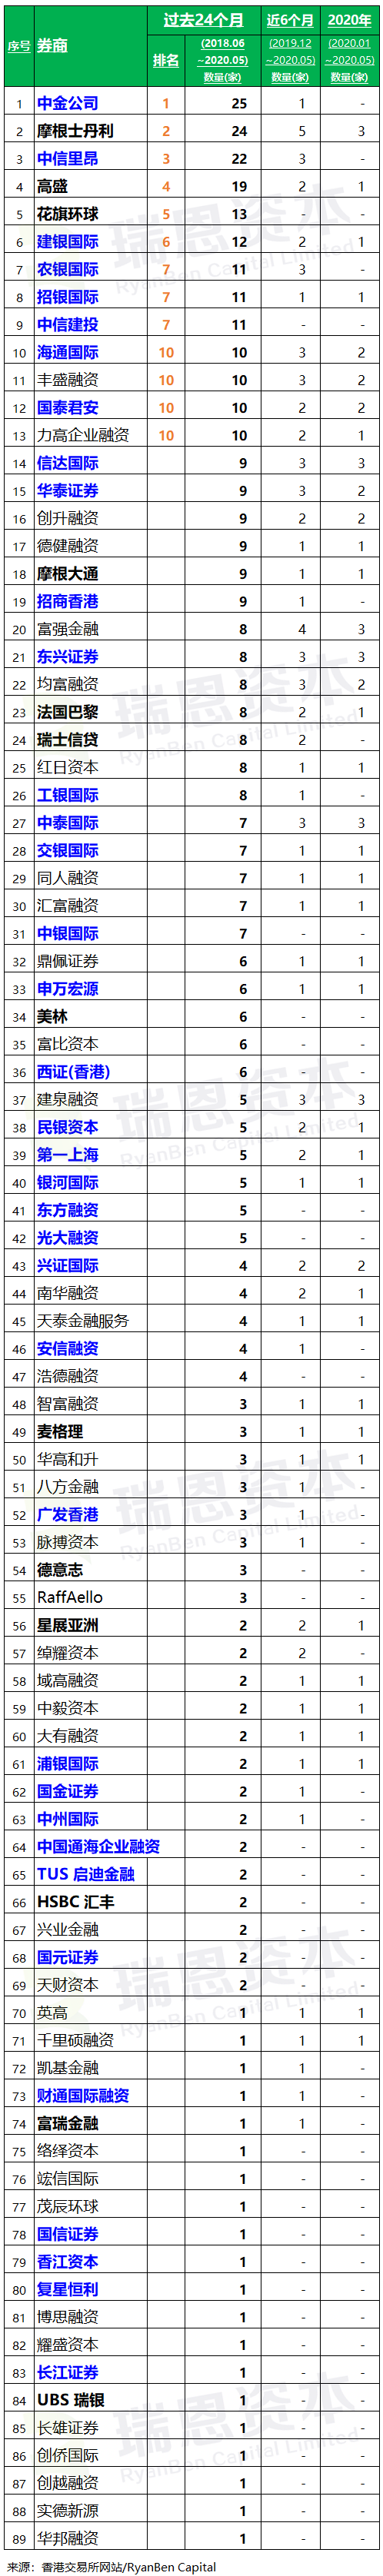 香港 IPO中介機構排行榜 (過去24個月：2018年6月-2020年5月)